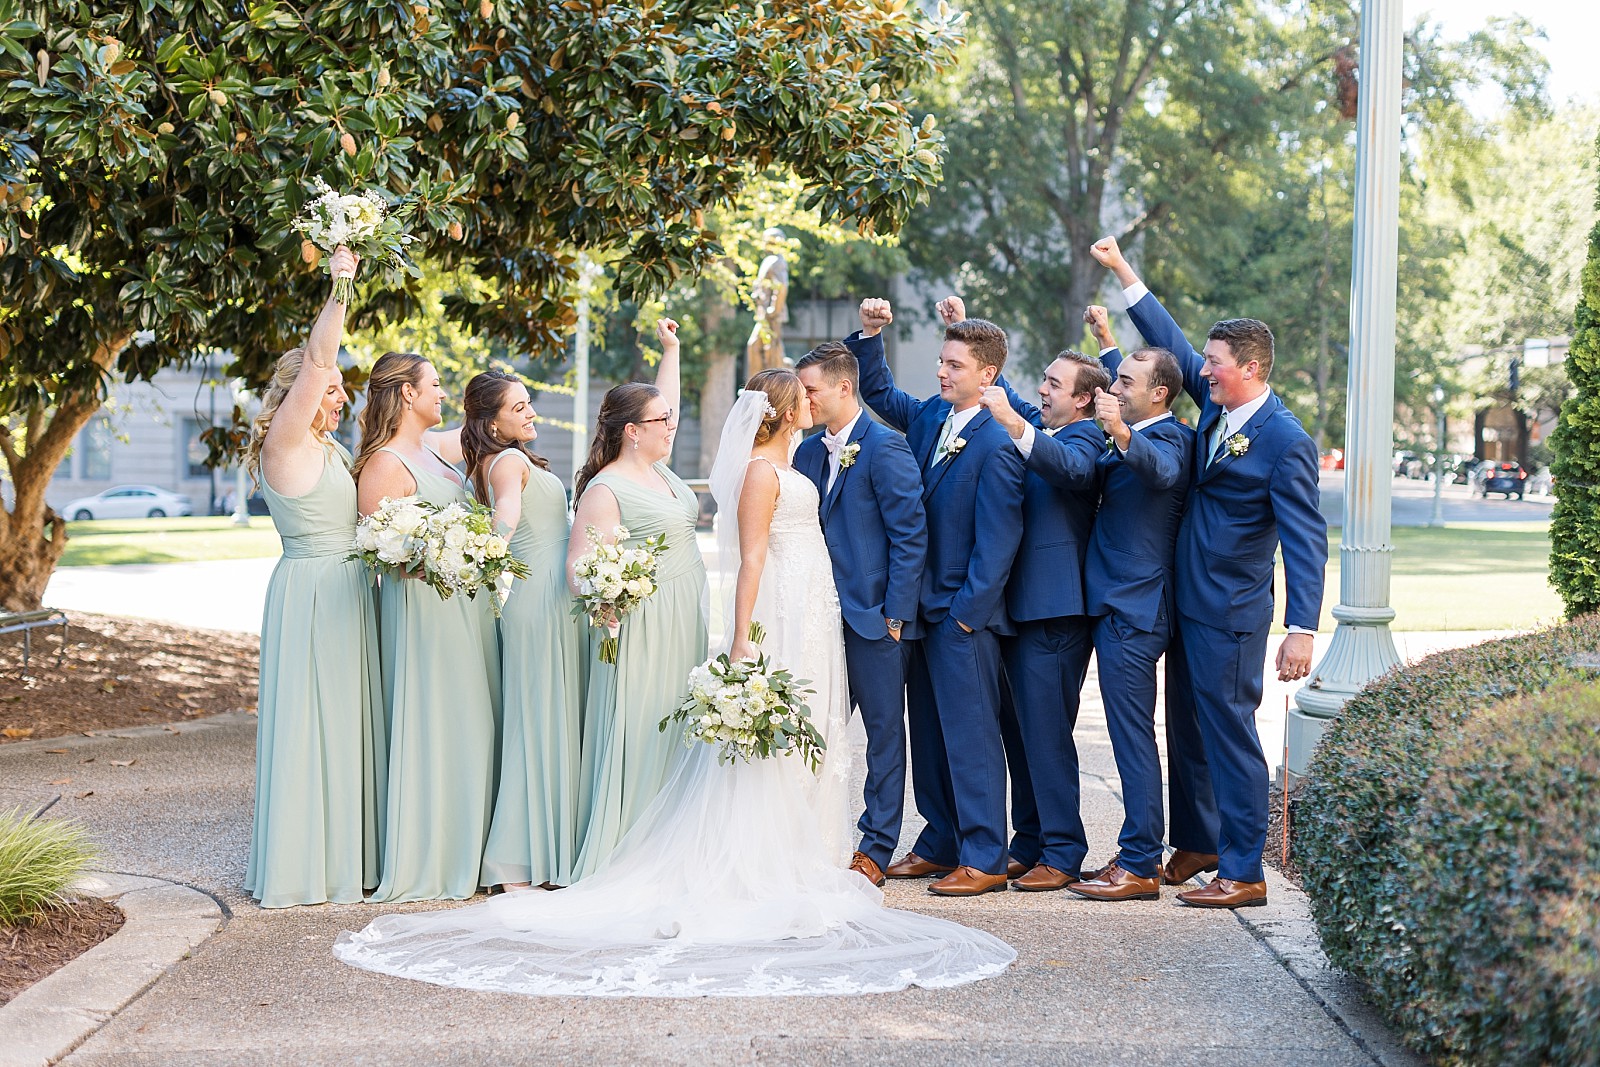 Wedding party celebrating | Raleigh Wedding Photographer Sarah Hinckley